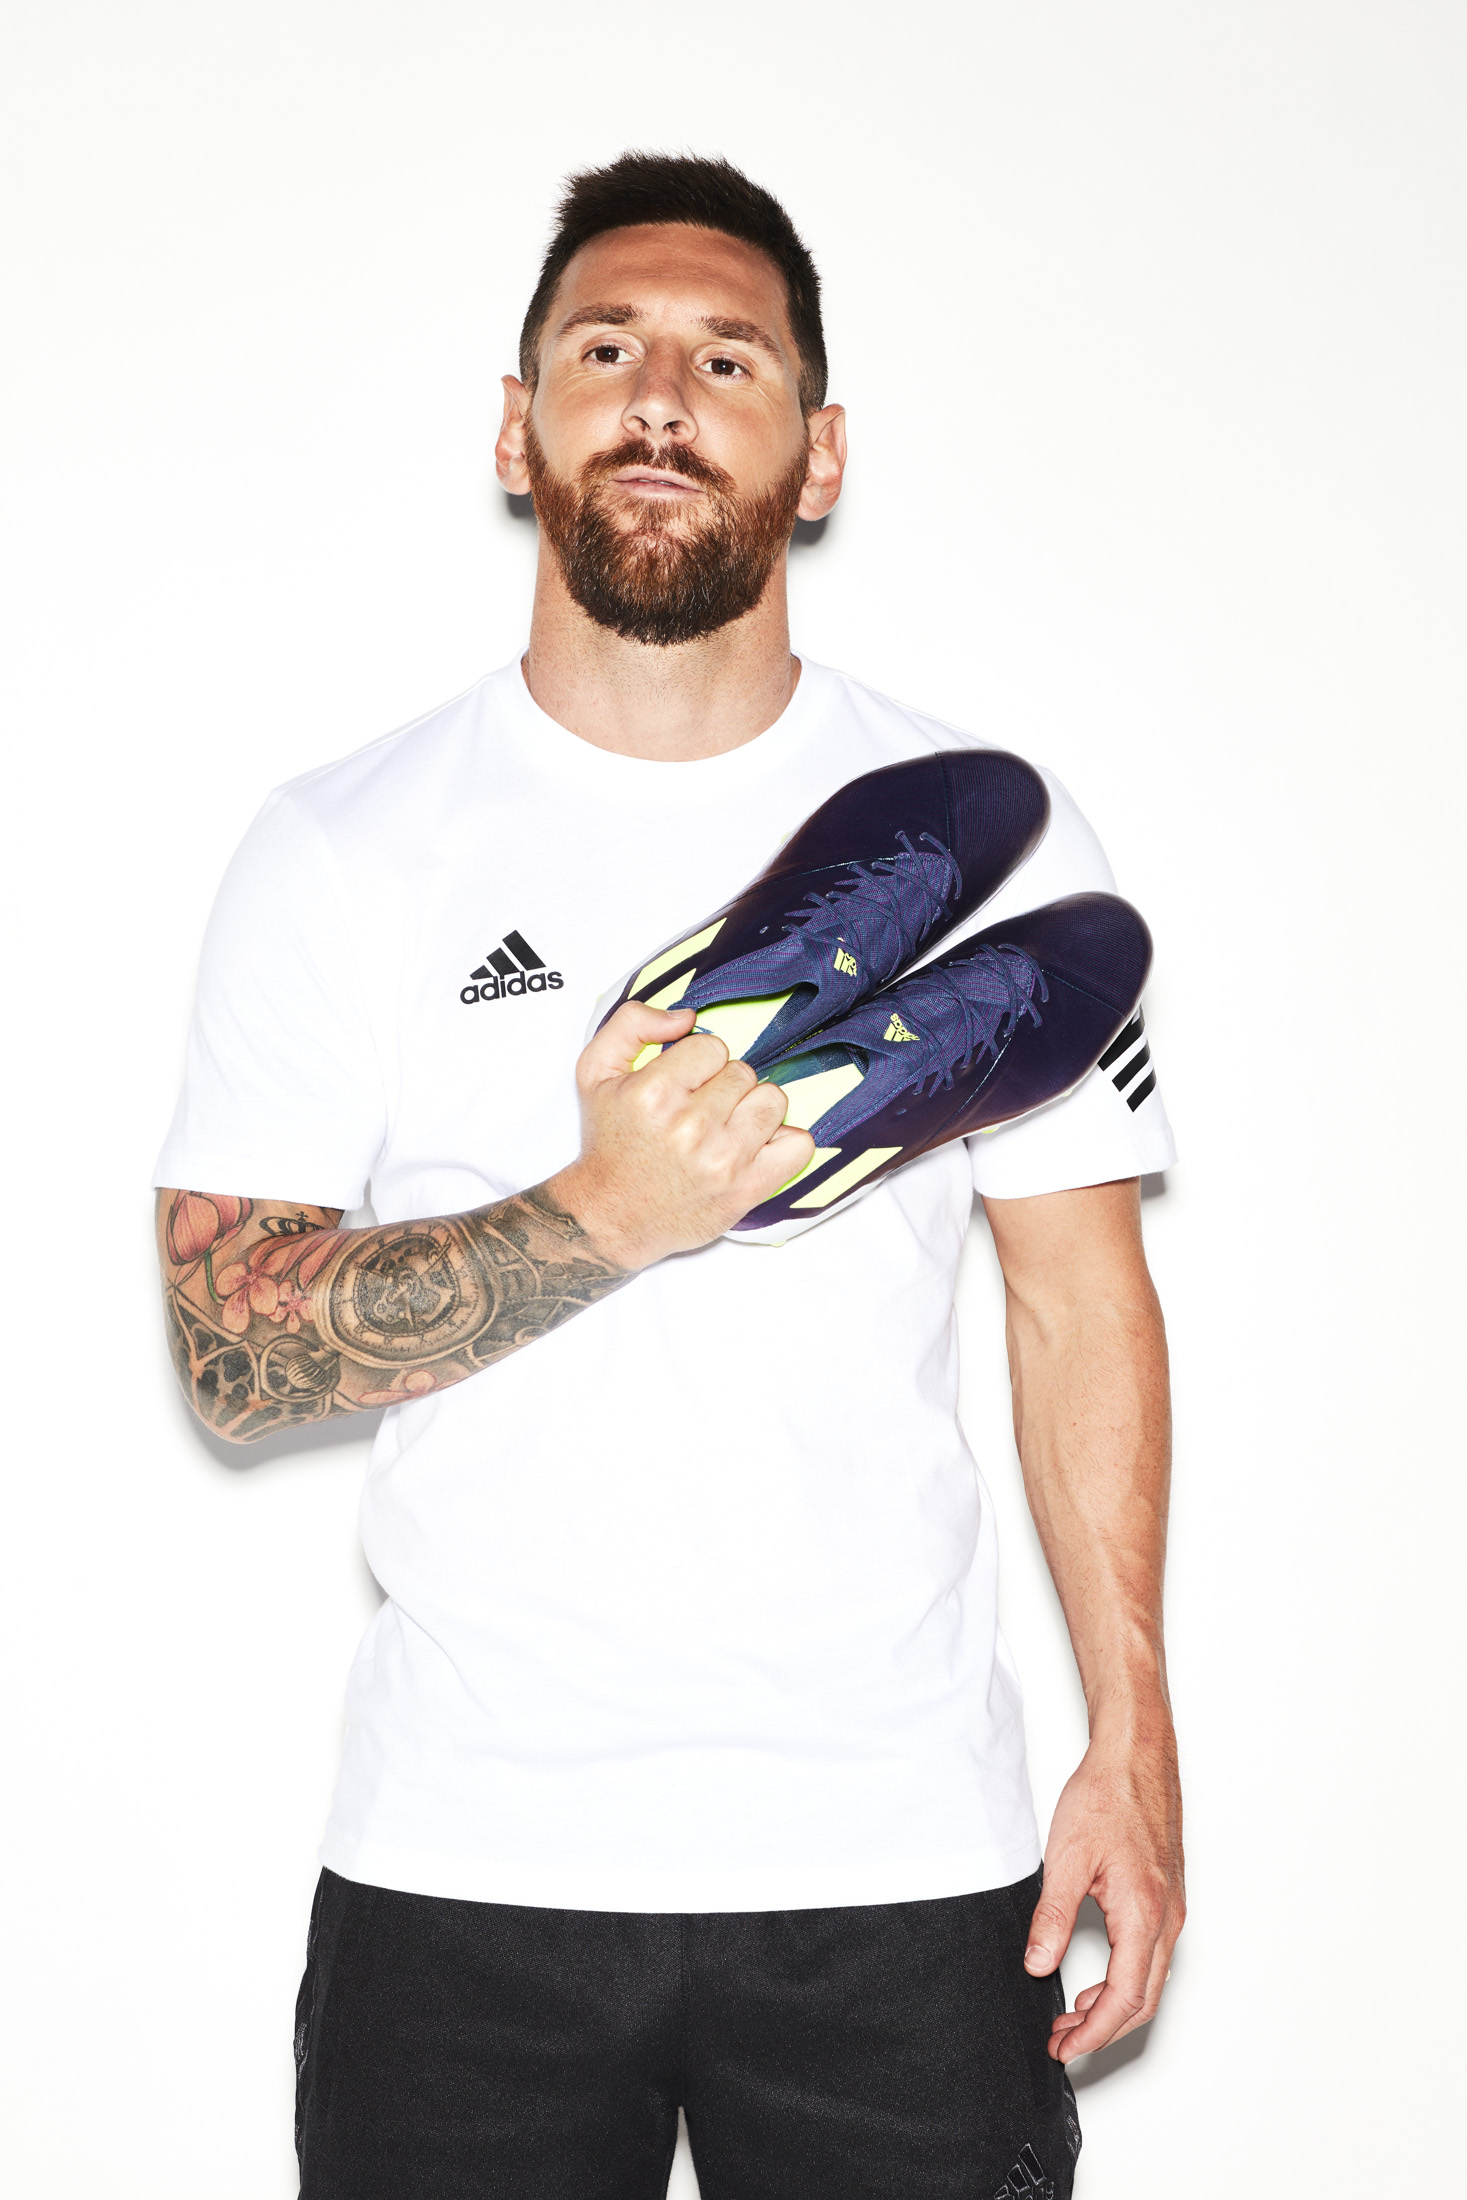 Lionel Messi - Adidas - william douglas